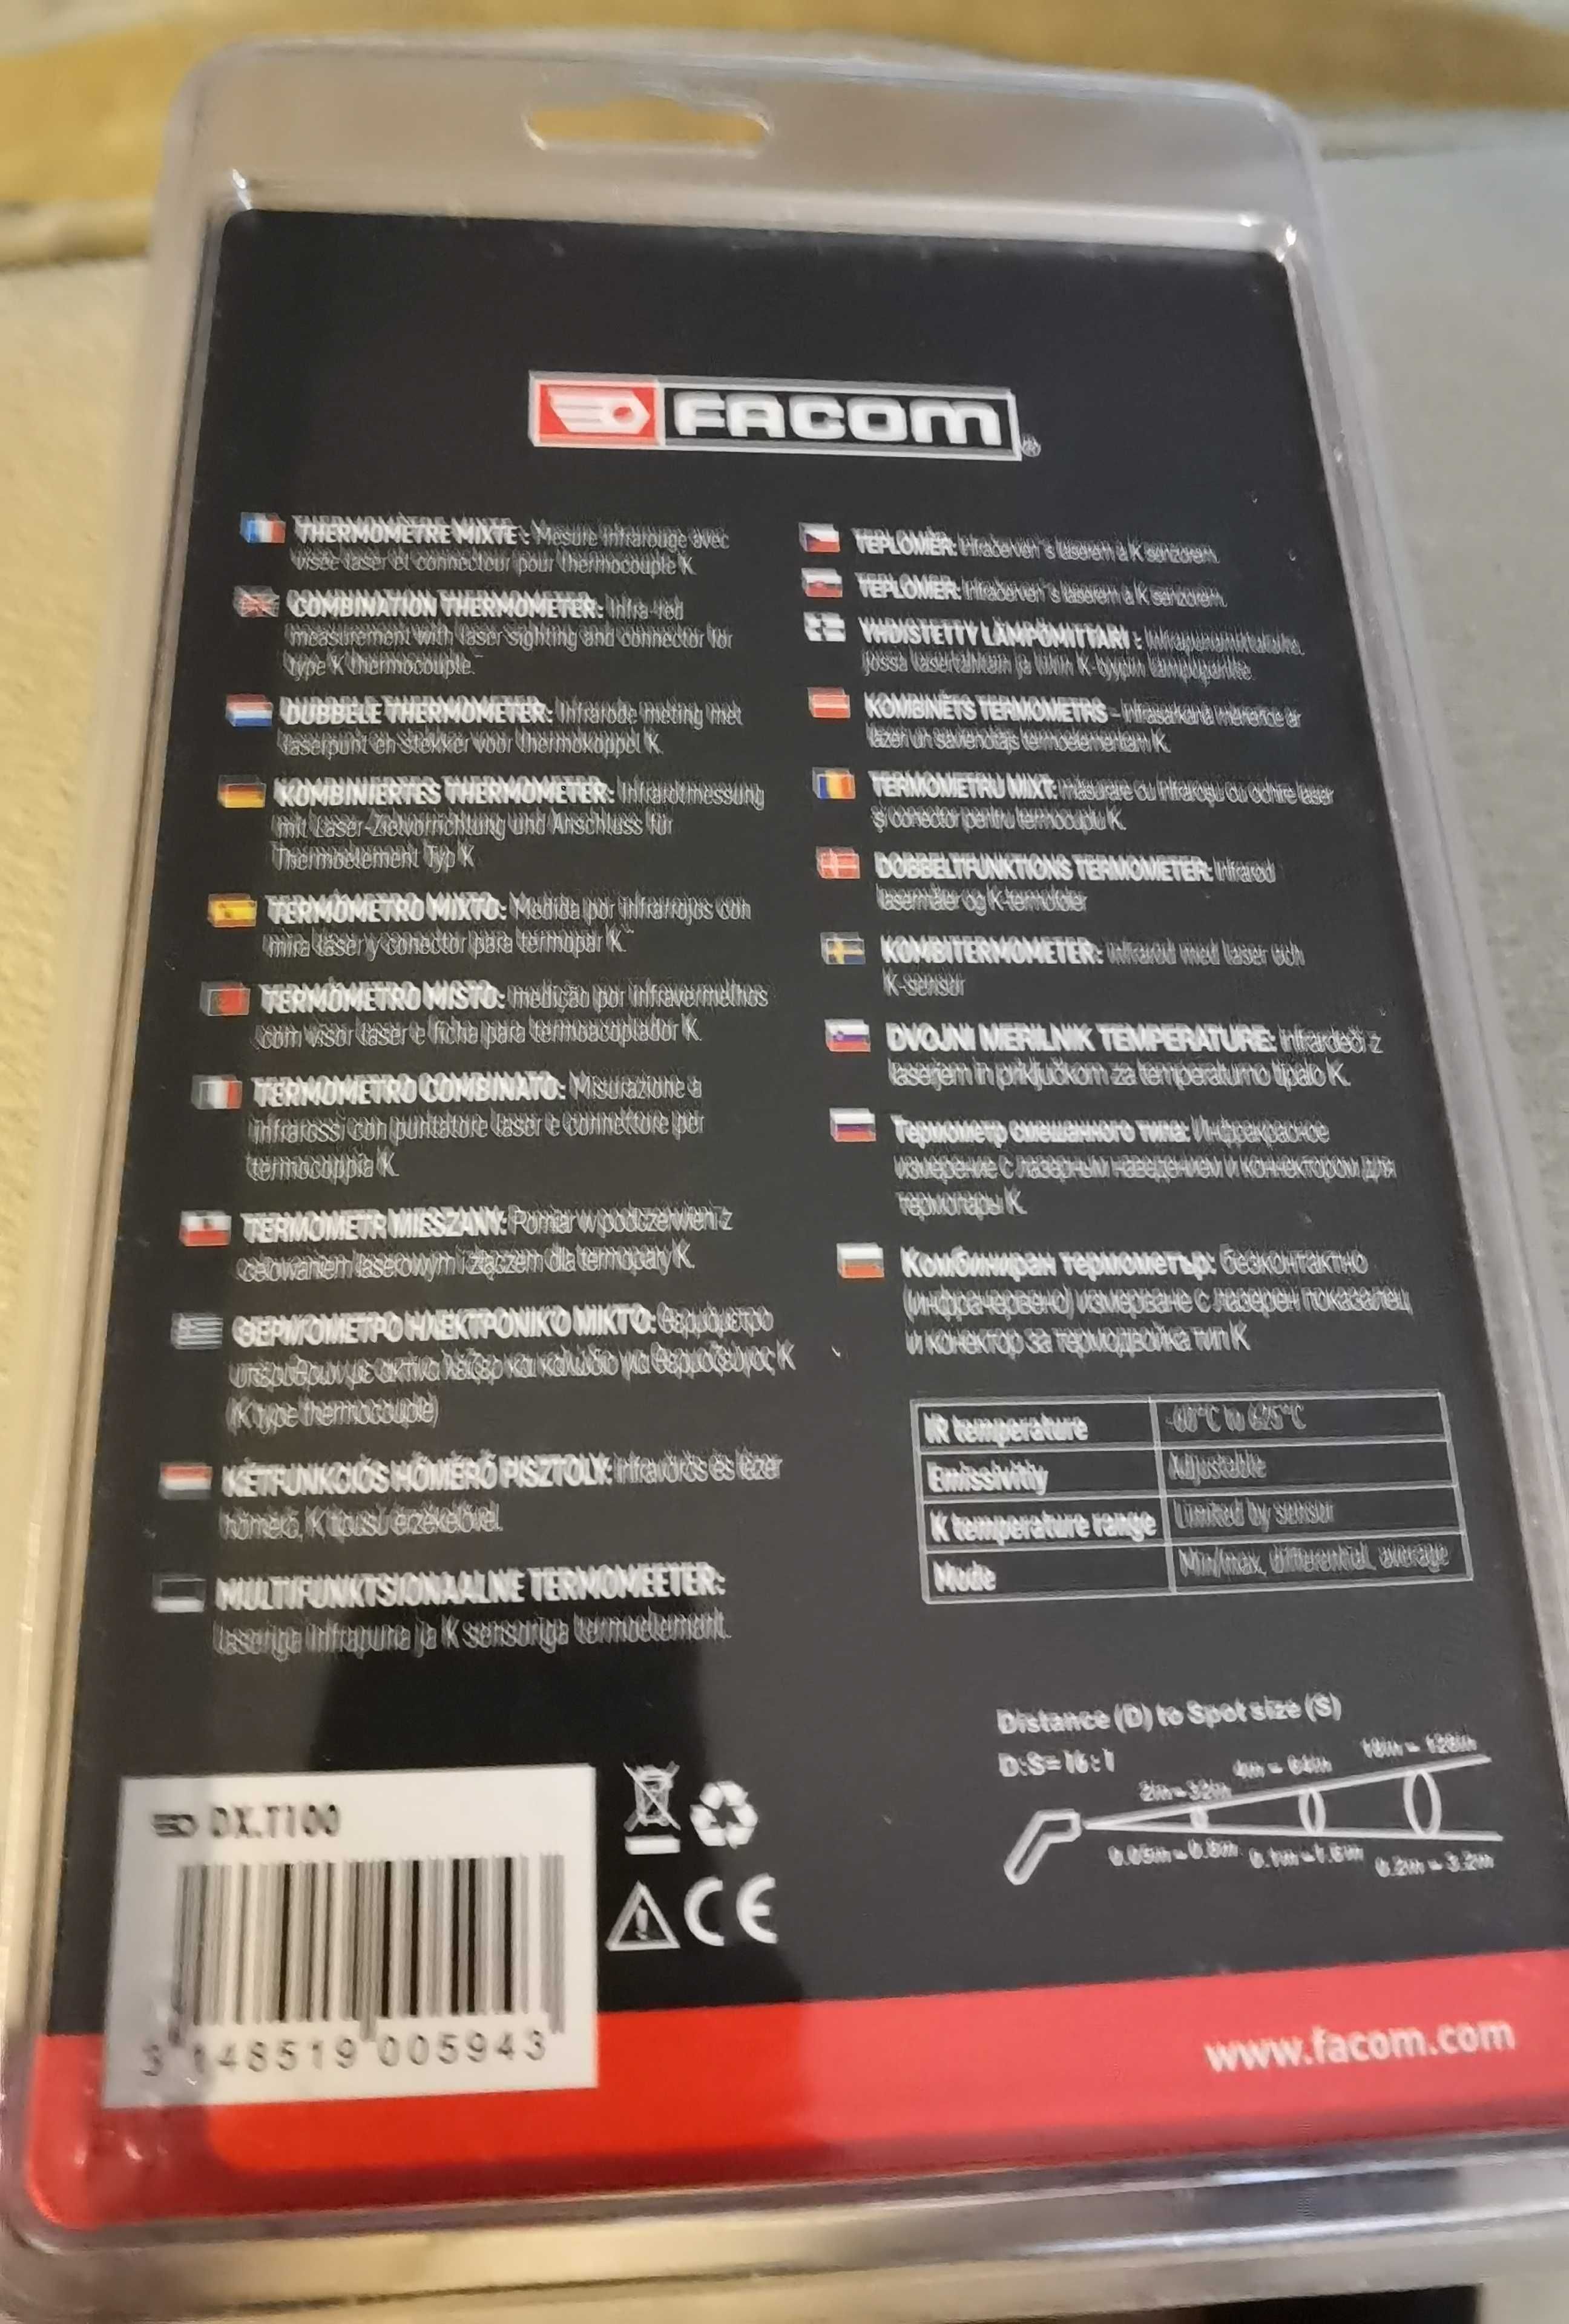 Termómetro Digital marca Facom.